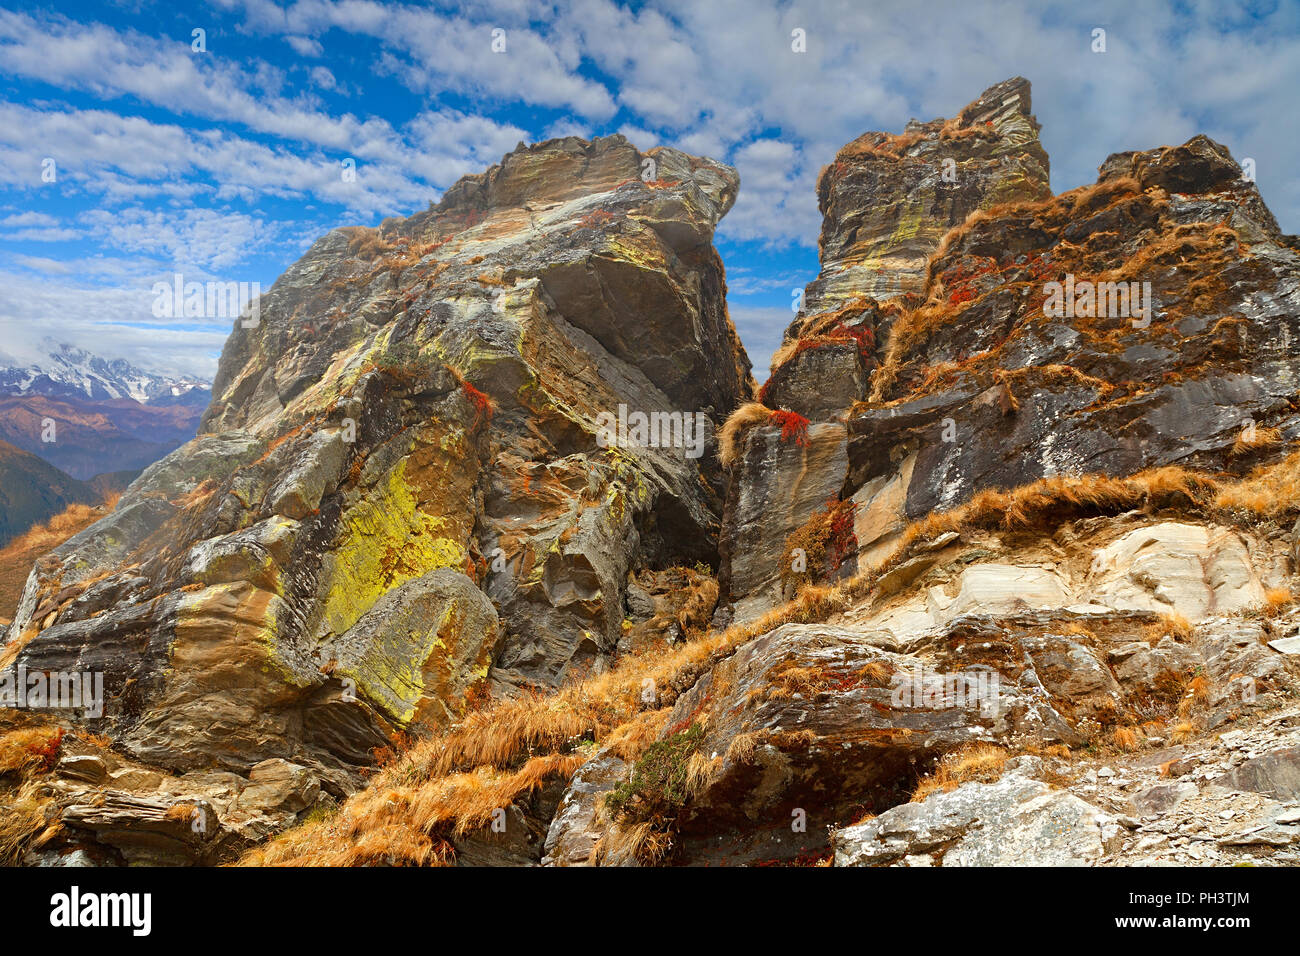 Enormes rocas cubiertas con vegetación amarillo y rojo con el cielo azul y las nubes blancas en el fondo, en la ladera del monte Chandrashila, Himalaya Foto de stock